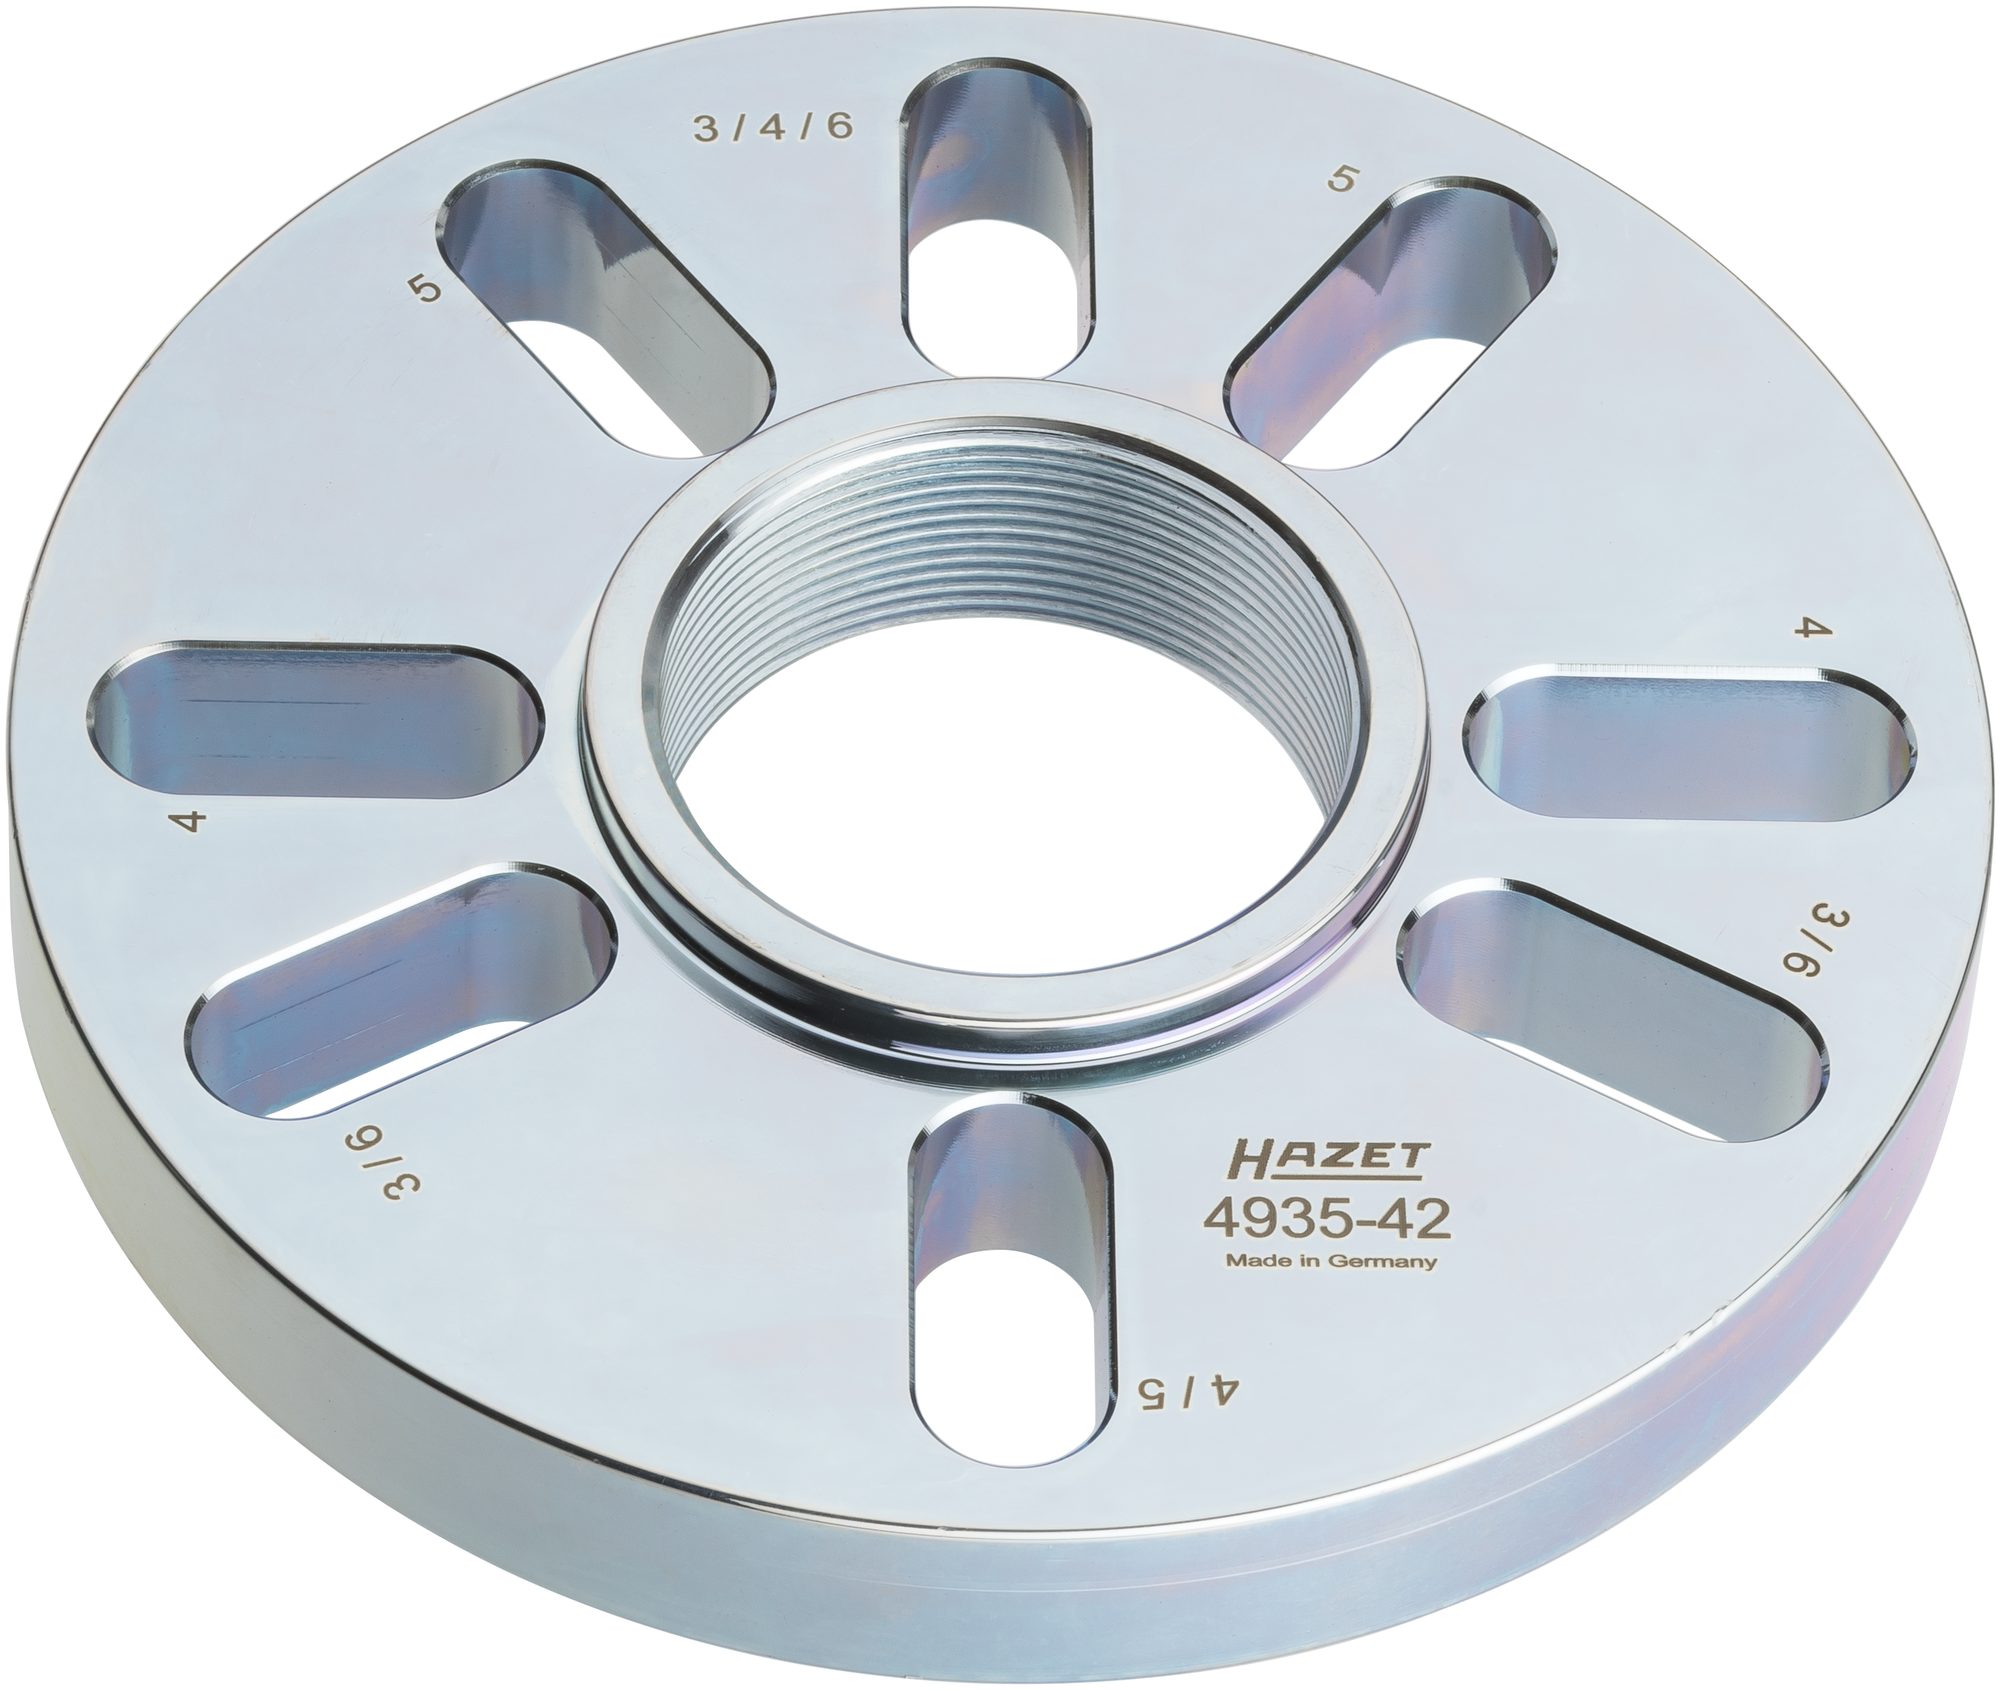 HAZET Lochkreisplatte _ 160 mm für Lochkreise _ 90 bis 130 mm 4935-42